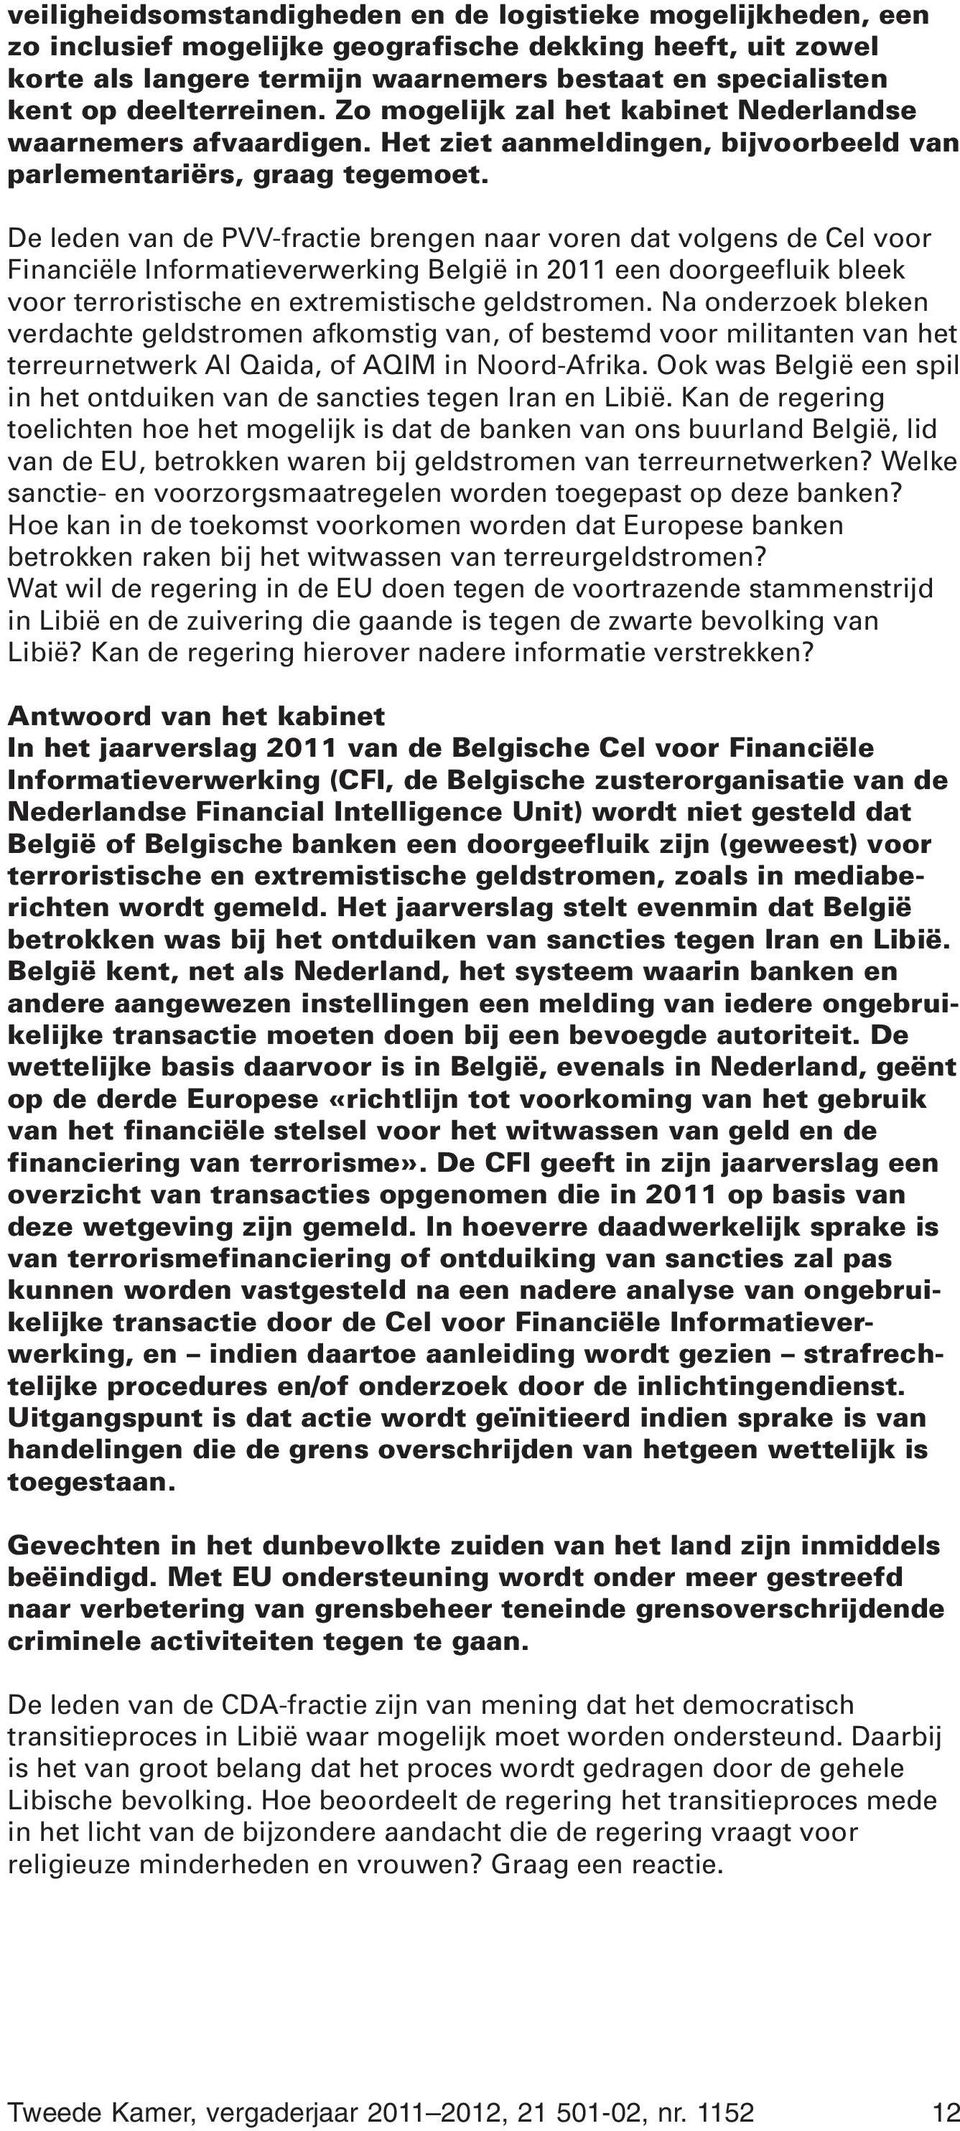 De leden van de PVV-fractie brengen naar voren dat volgens de Cel voor Financiële Informatieverwerking België in 2011 een doorgeefluik bleek voor terroristische en extremistische geldstromen.